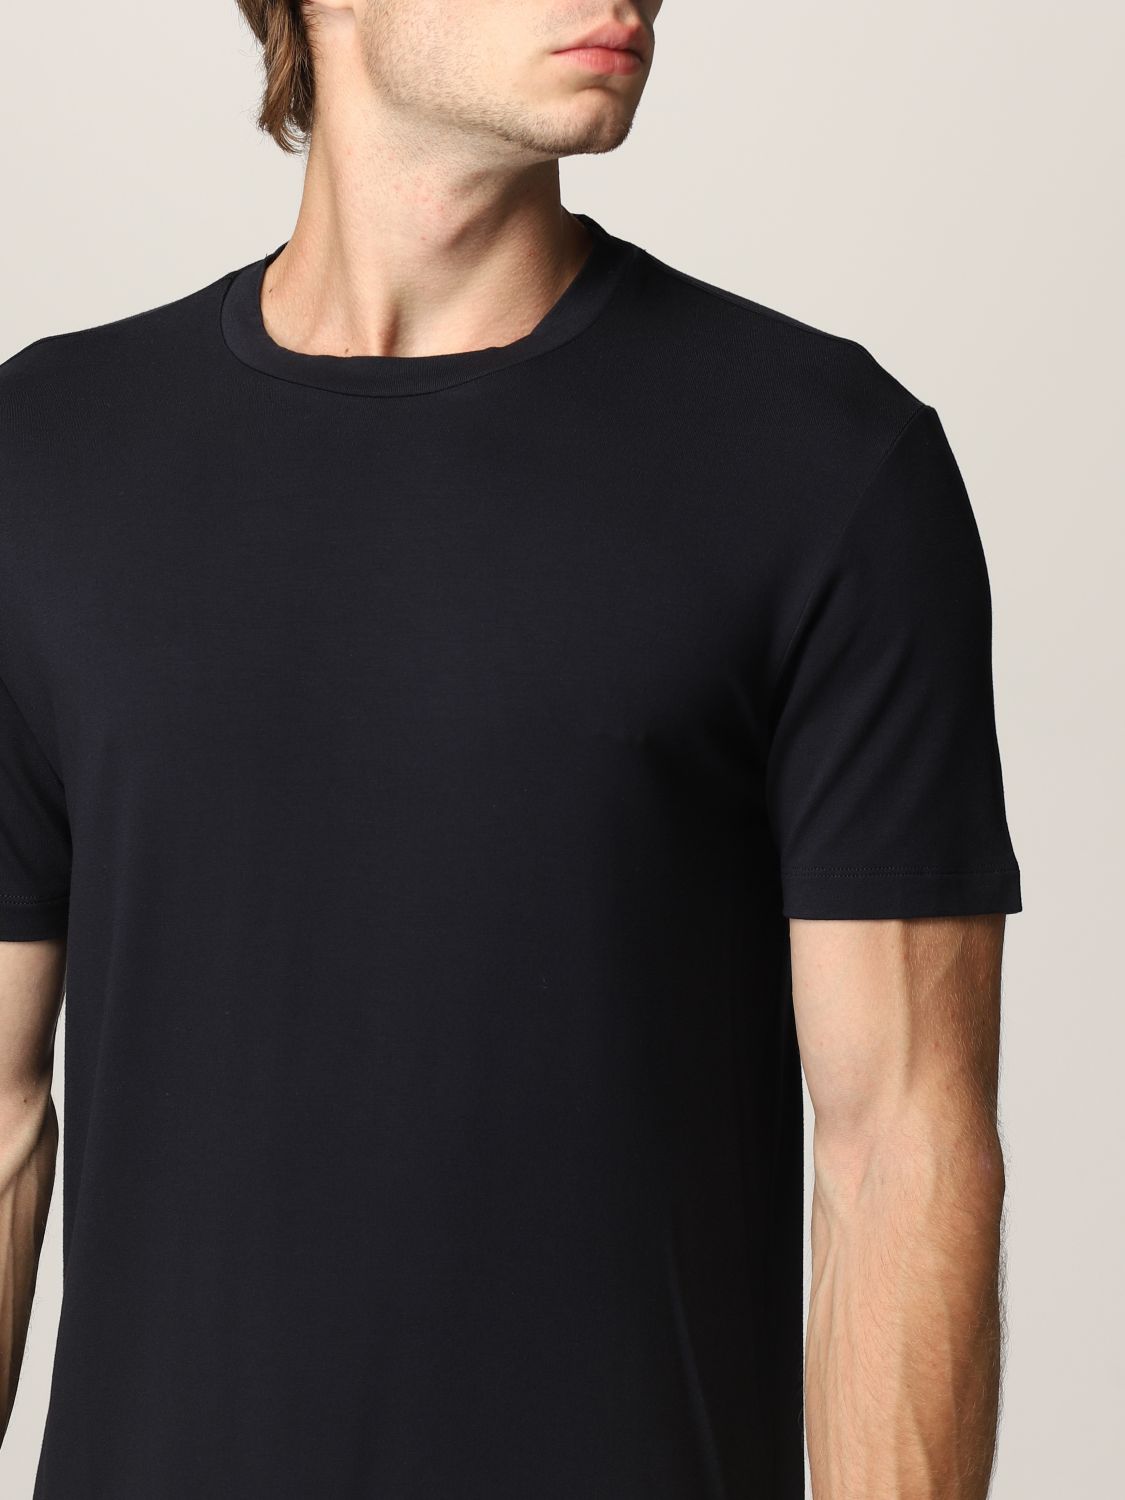 Camiseta Emporio Armani: Camiseta hombre Emporio Armani azul oscuro 3